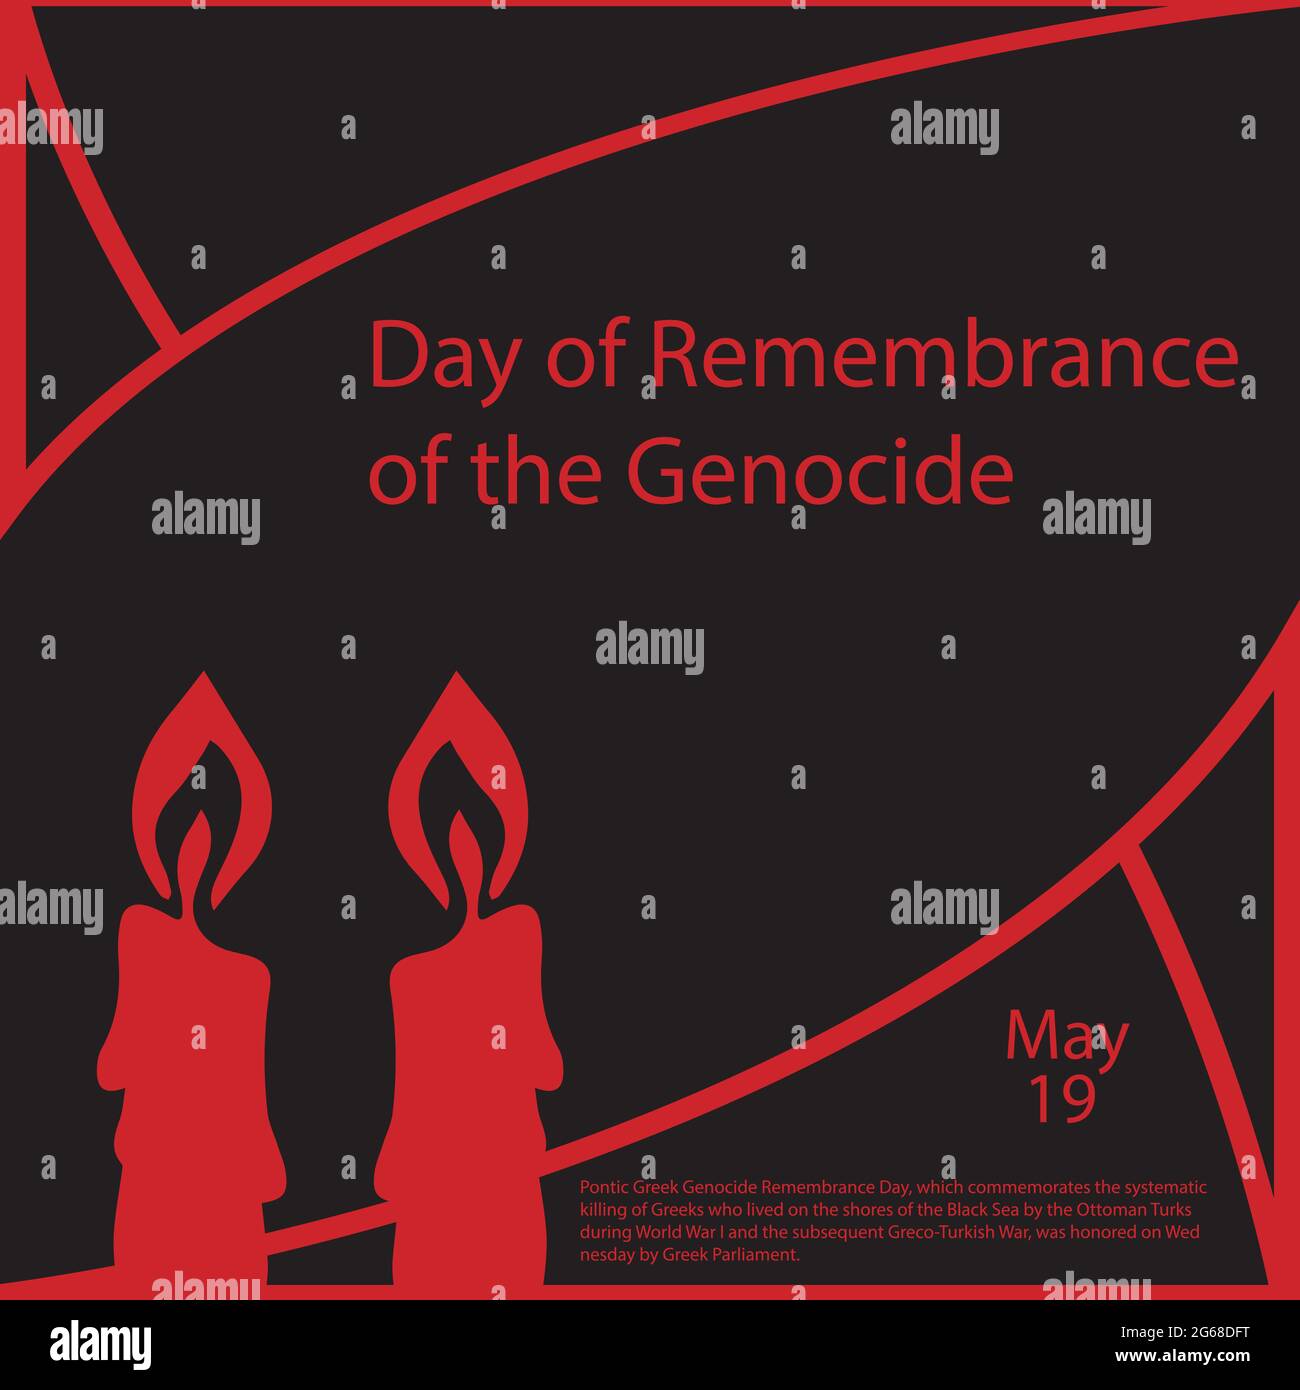 Pontic Greek Genocide Remembrance Day, che commemora l'uccisione sistematica dei greci che vivevano sulle rive del Mar Nero da parte degli ottomani. Illustrazione Vettoriale